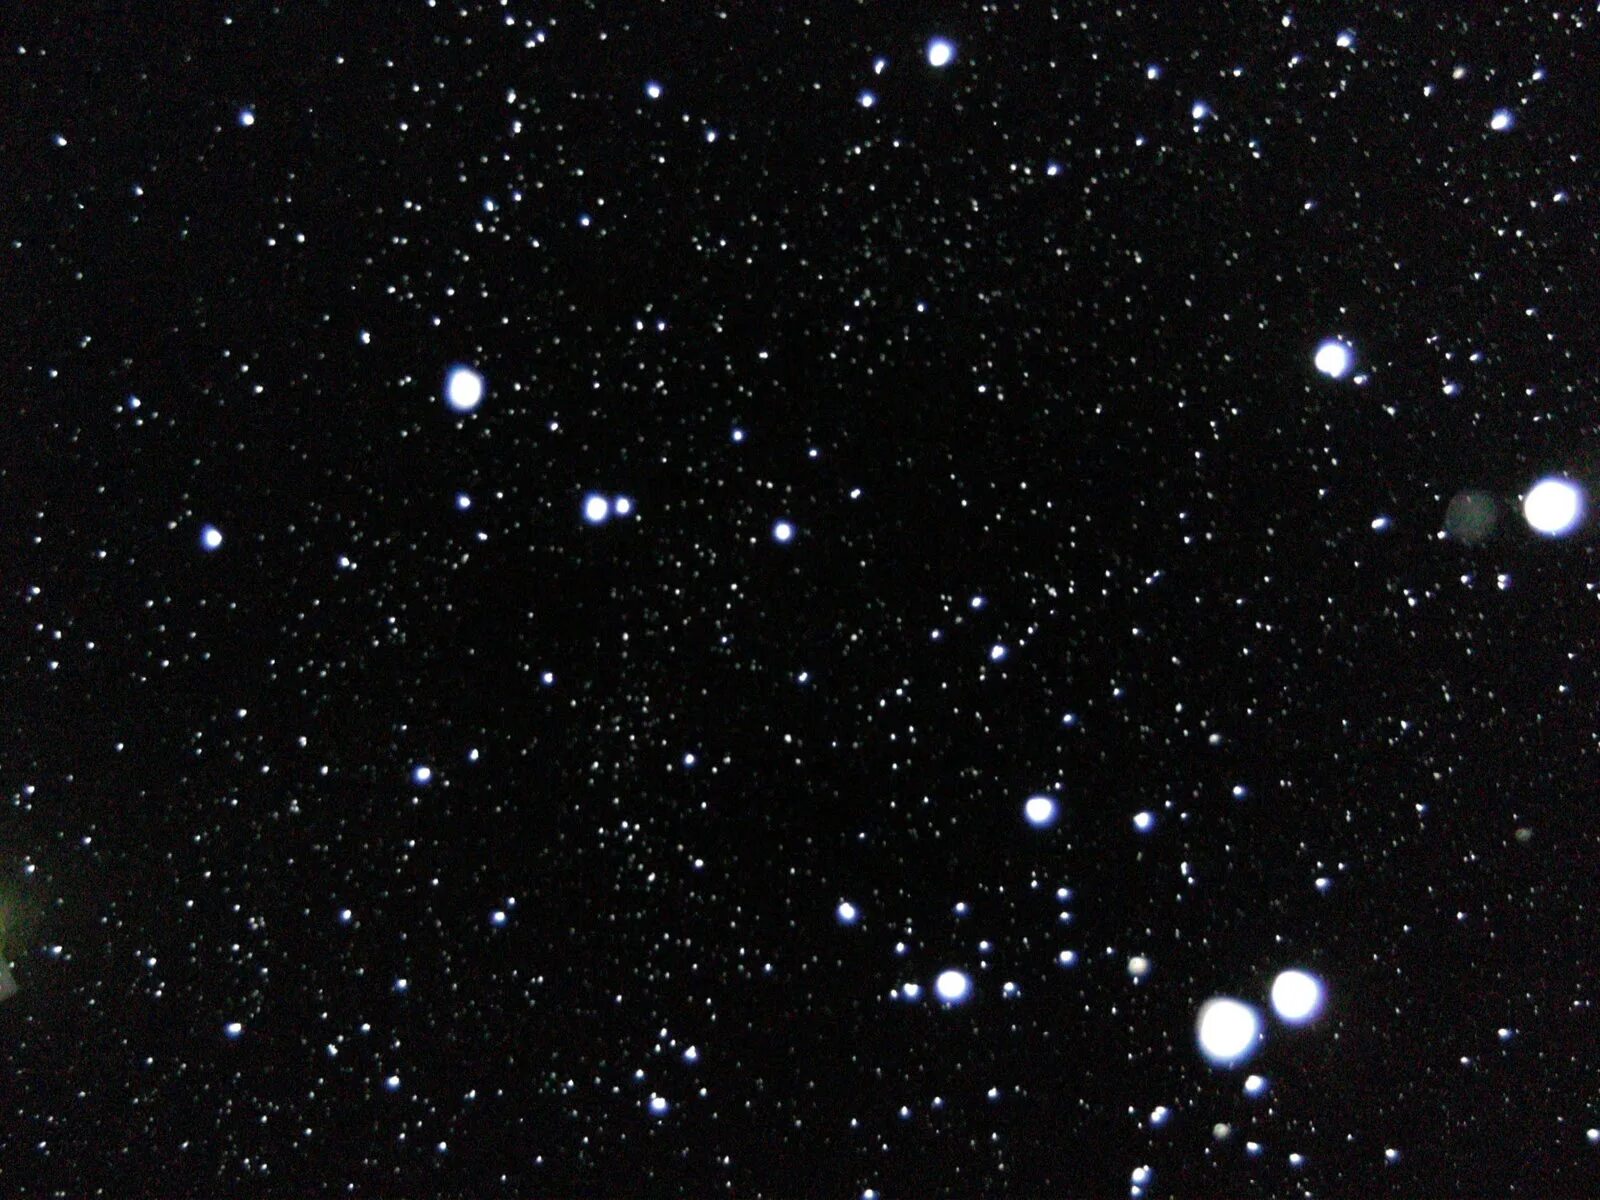 Снег текстура. Снег для фотошопа. Снегопад для фотошопа. Текстура снега для фотошопа.